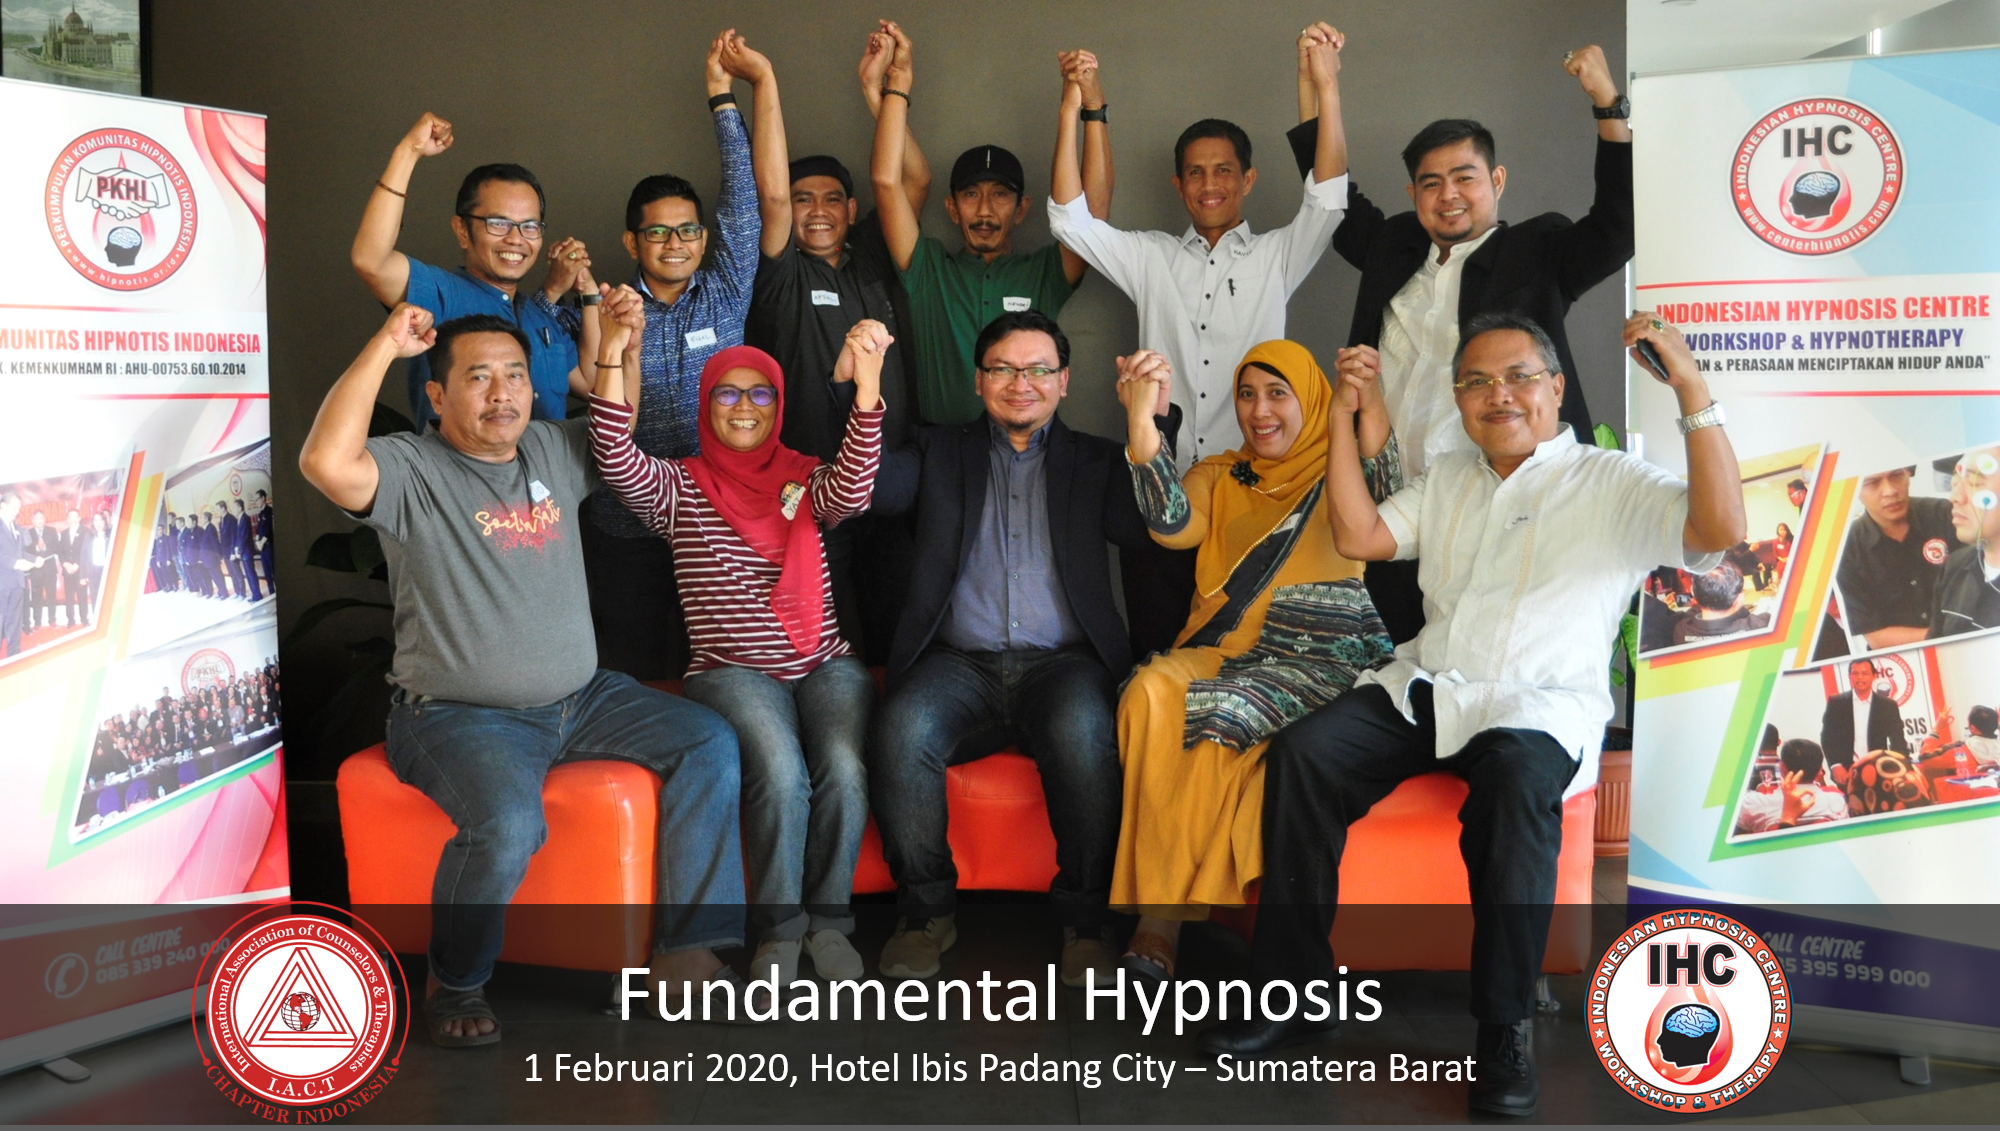 Andri Hakim25 - Fundamental Hypnosis - Februari 1, 2020, Padang